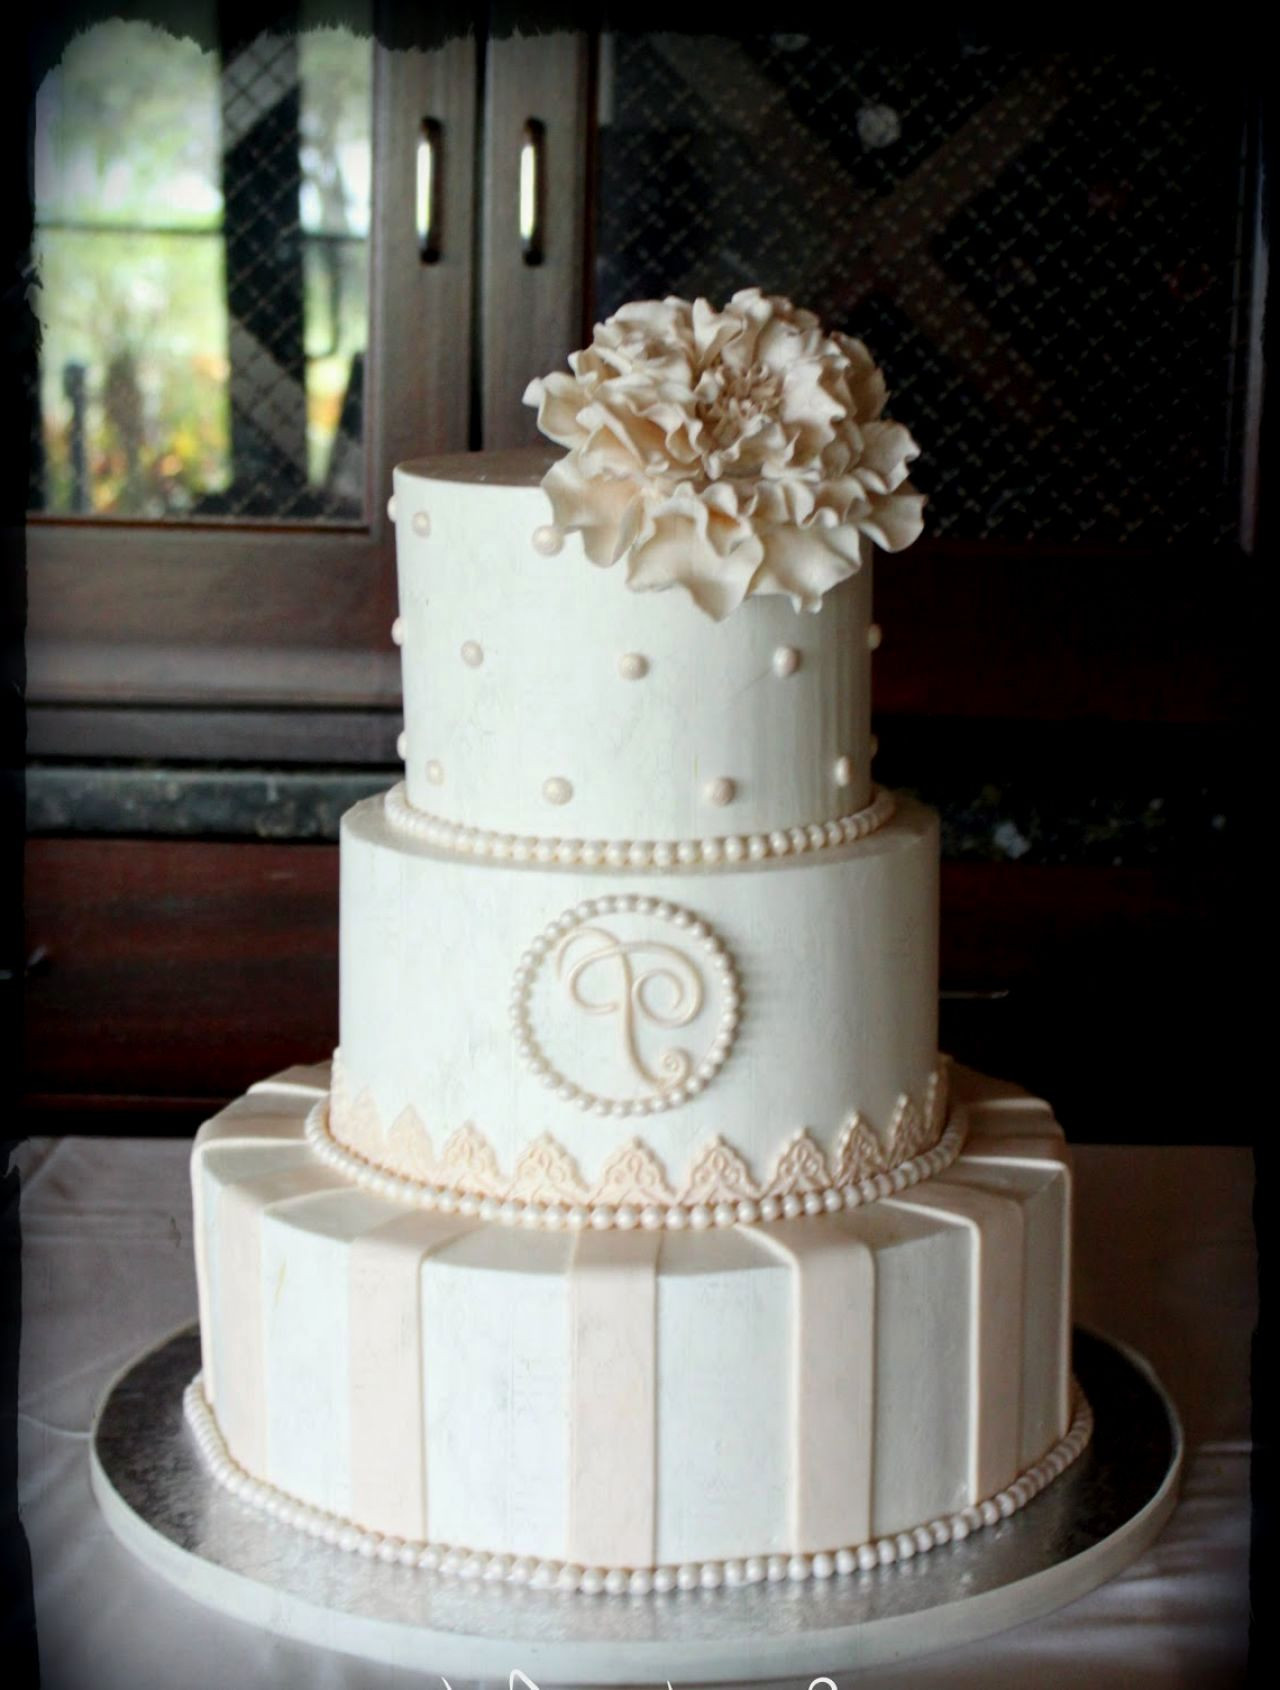 Simple And Elegant Wedding Cakes
 Elegant simple wedding cakes idea in 2017